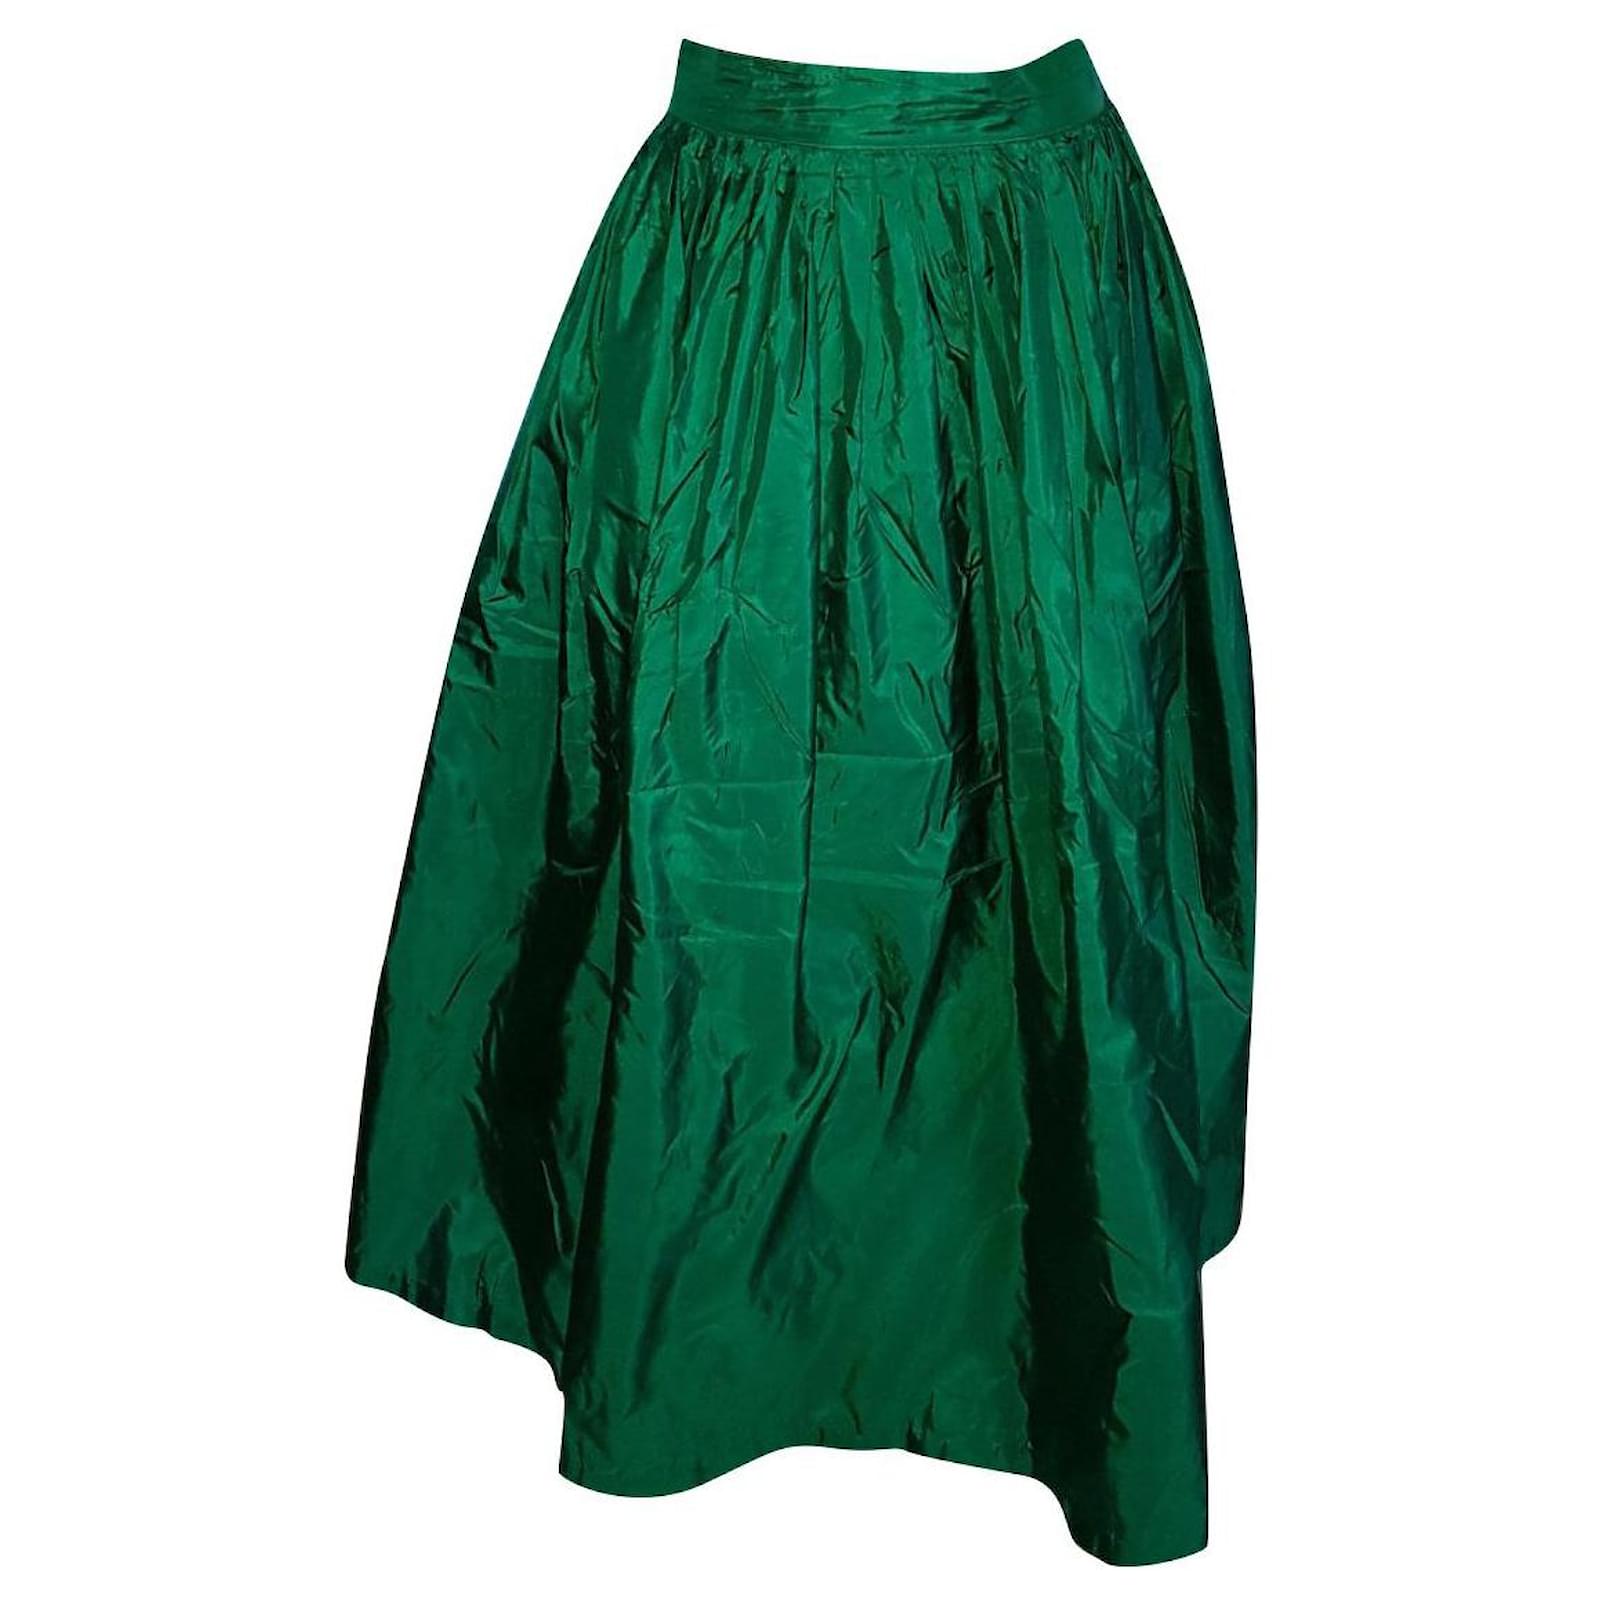 Georges Rech - Luxurious long evening skirt in emerald green silk ...